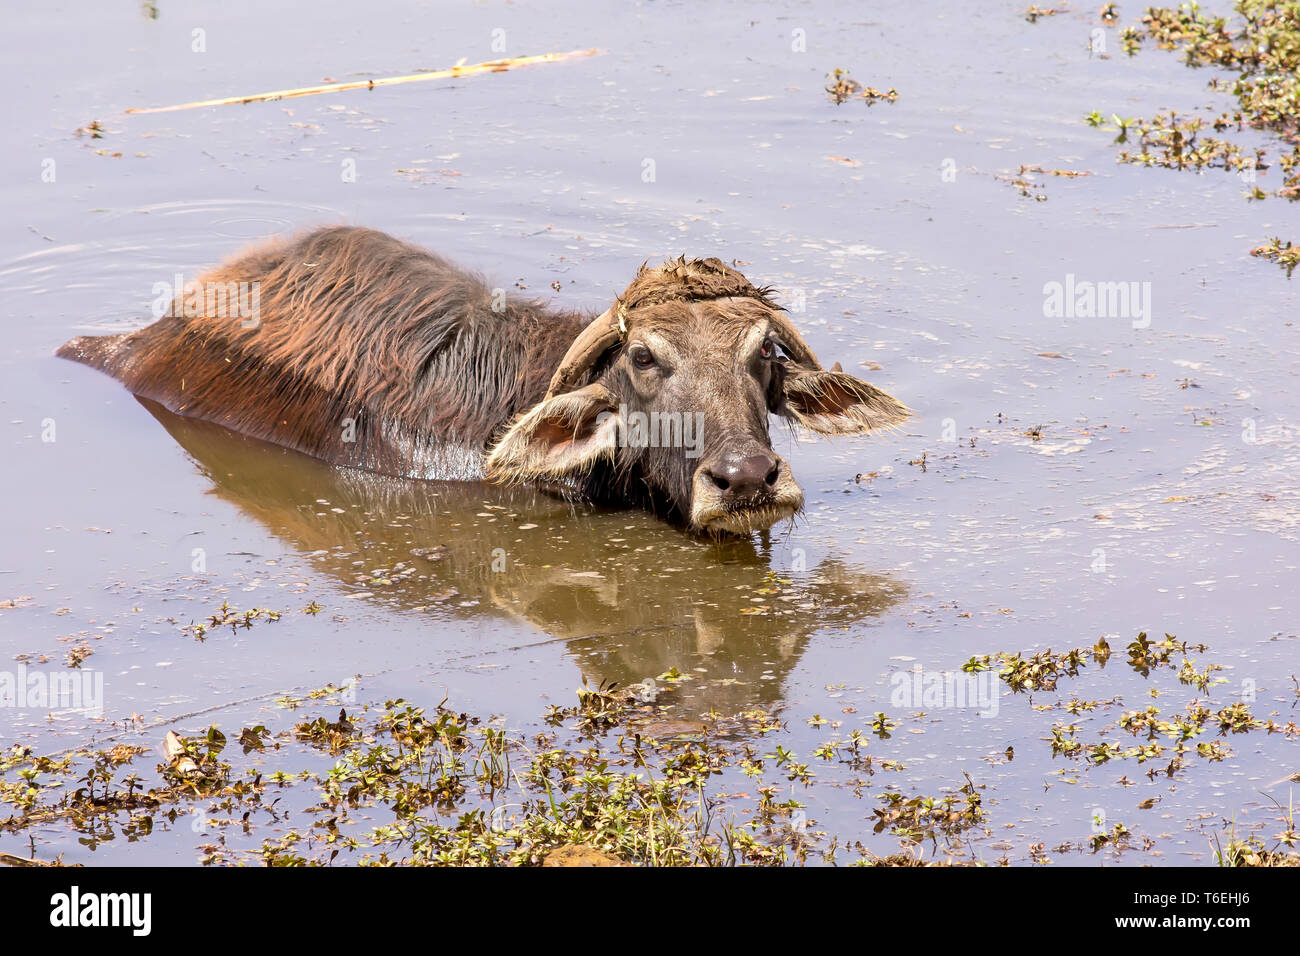 Búfalo de agua egipcia descansa en el agua del estanque durante la mitad del día Foto de stock